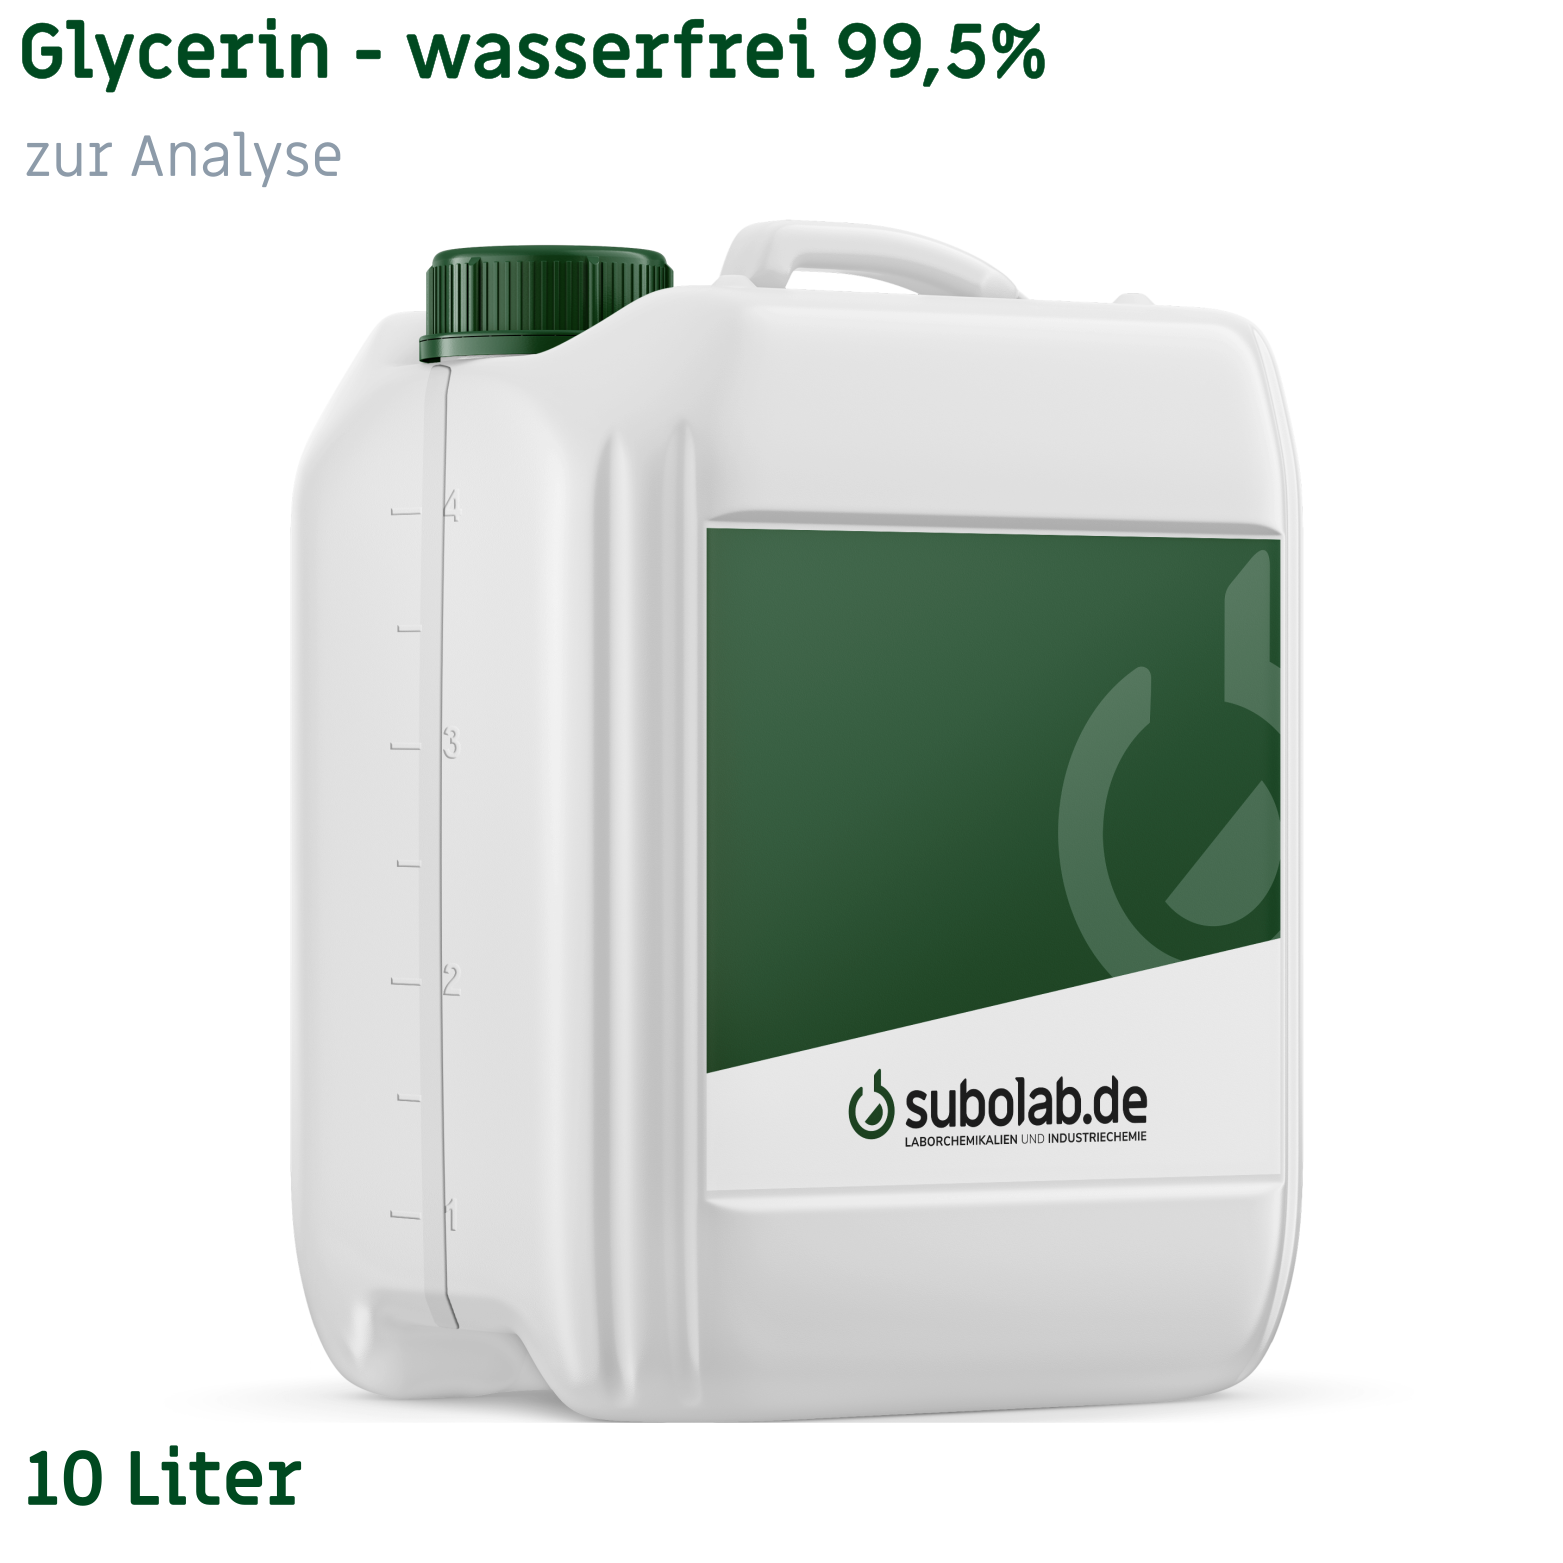 Bild von Glycerin - wasserfrei 99,5% zur Analyse (10 Liter)